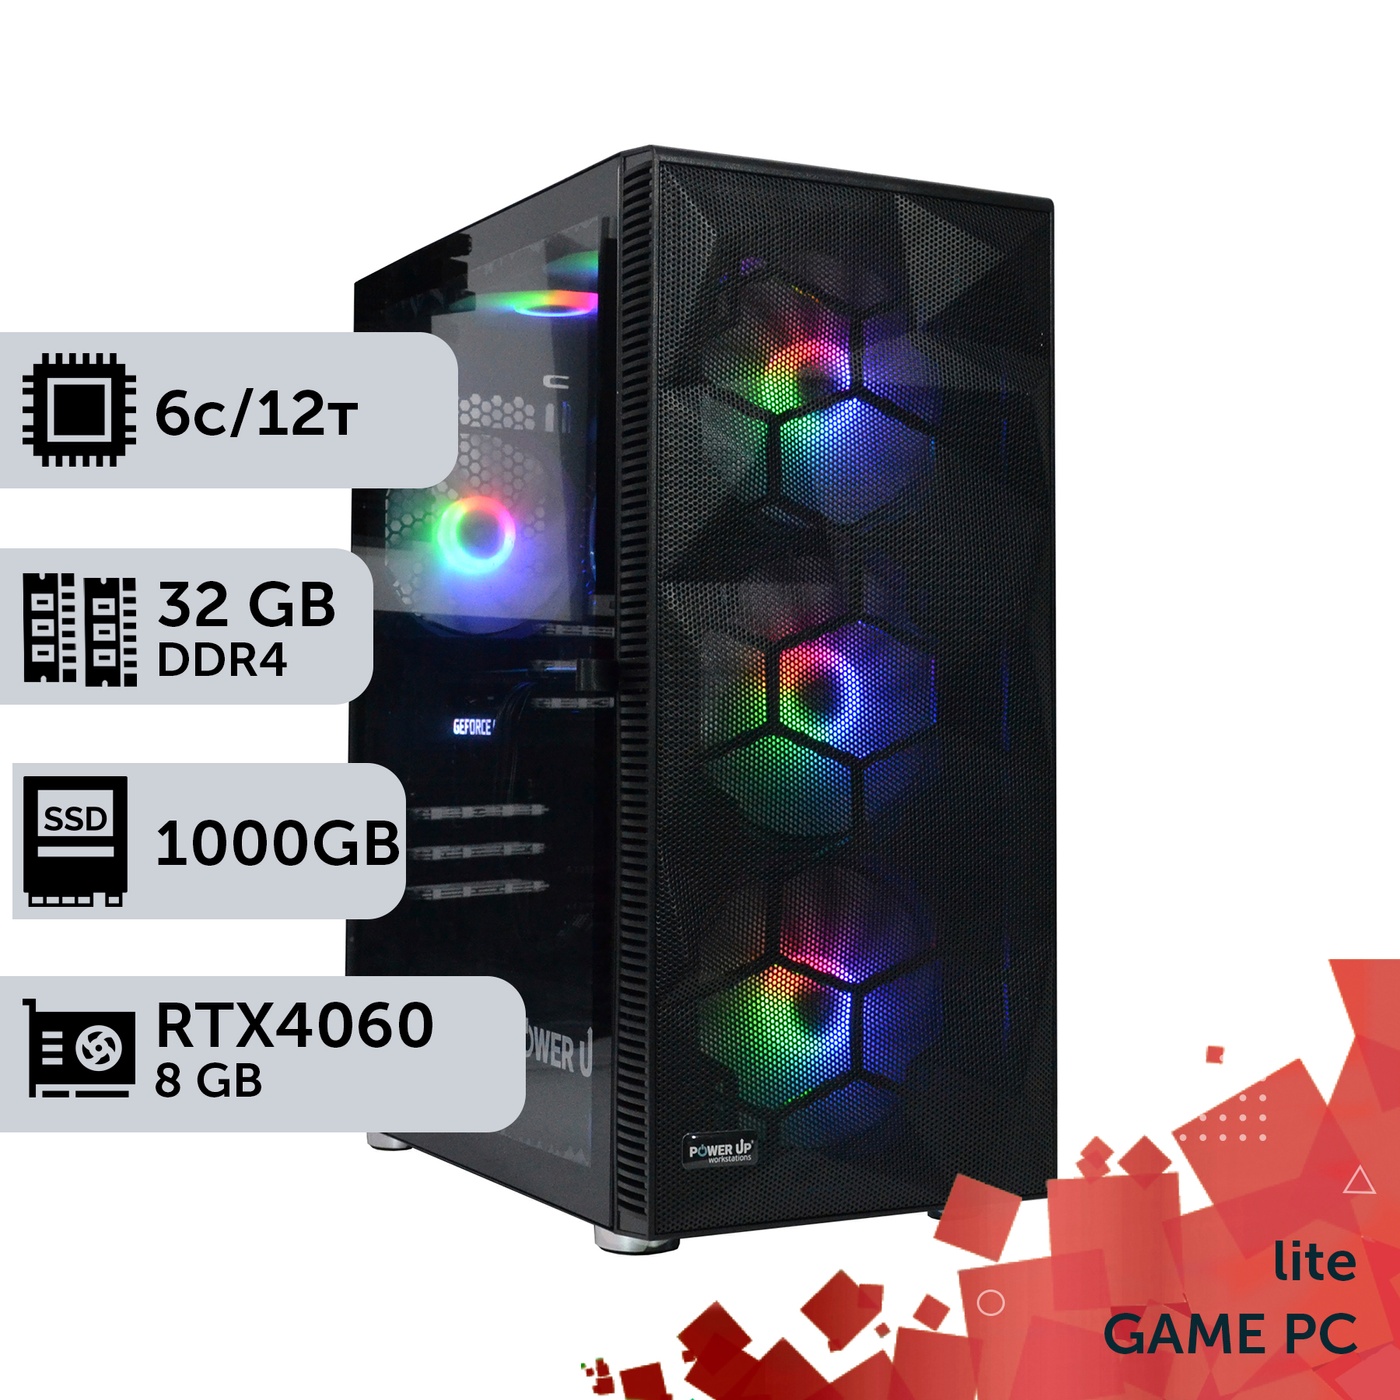 Ігровий комп'ютер GamePC Lite #226 Ryzen 5 4500/32 GB/SSD 1TB/GeForce RTX 4060 8GB